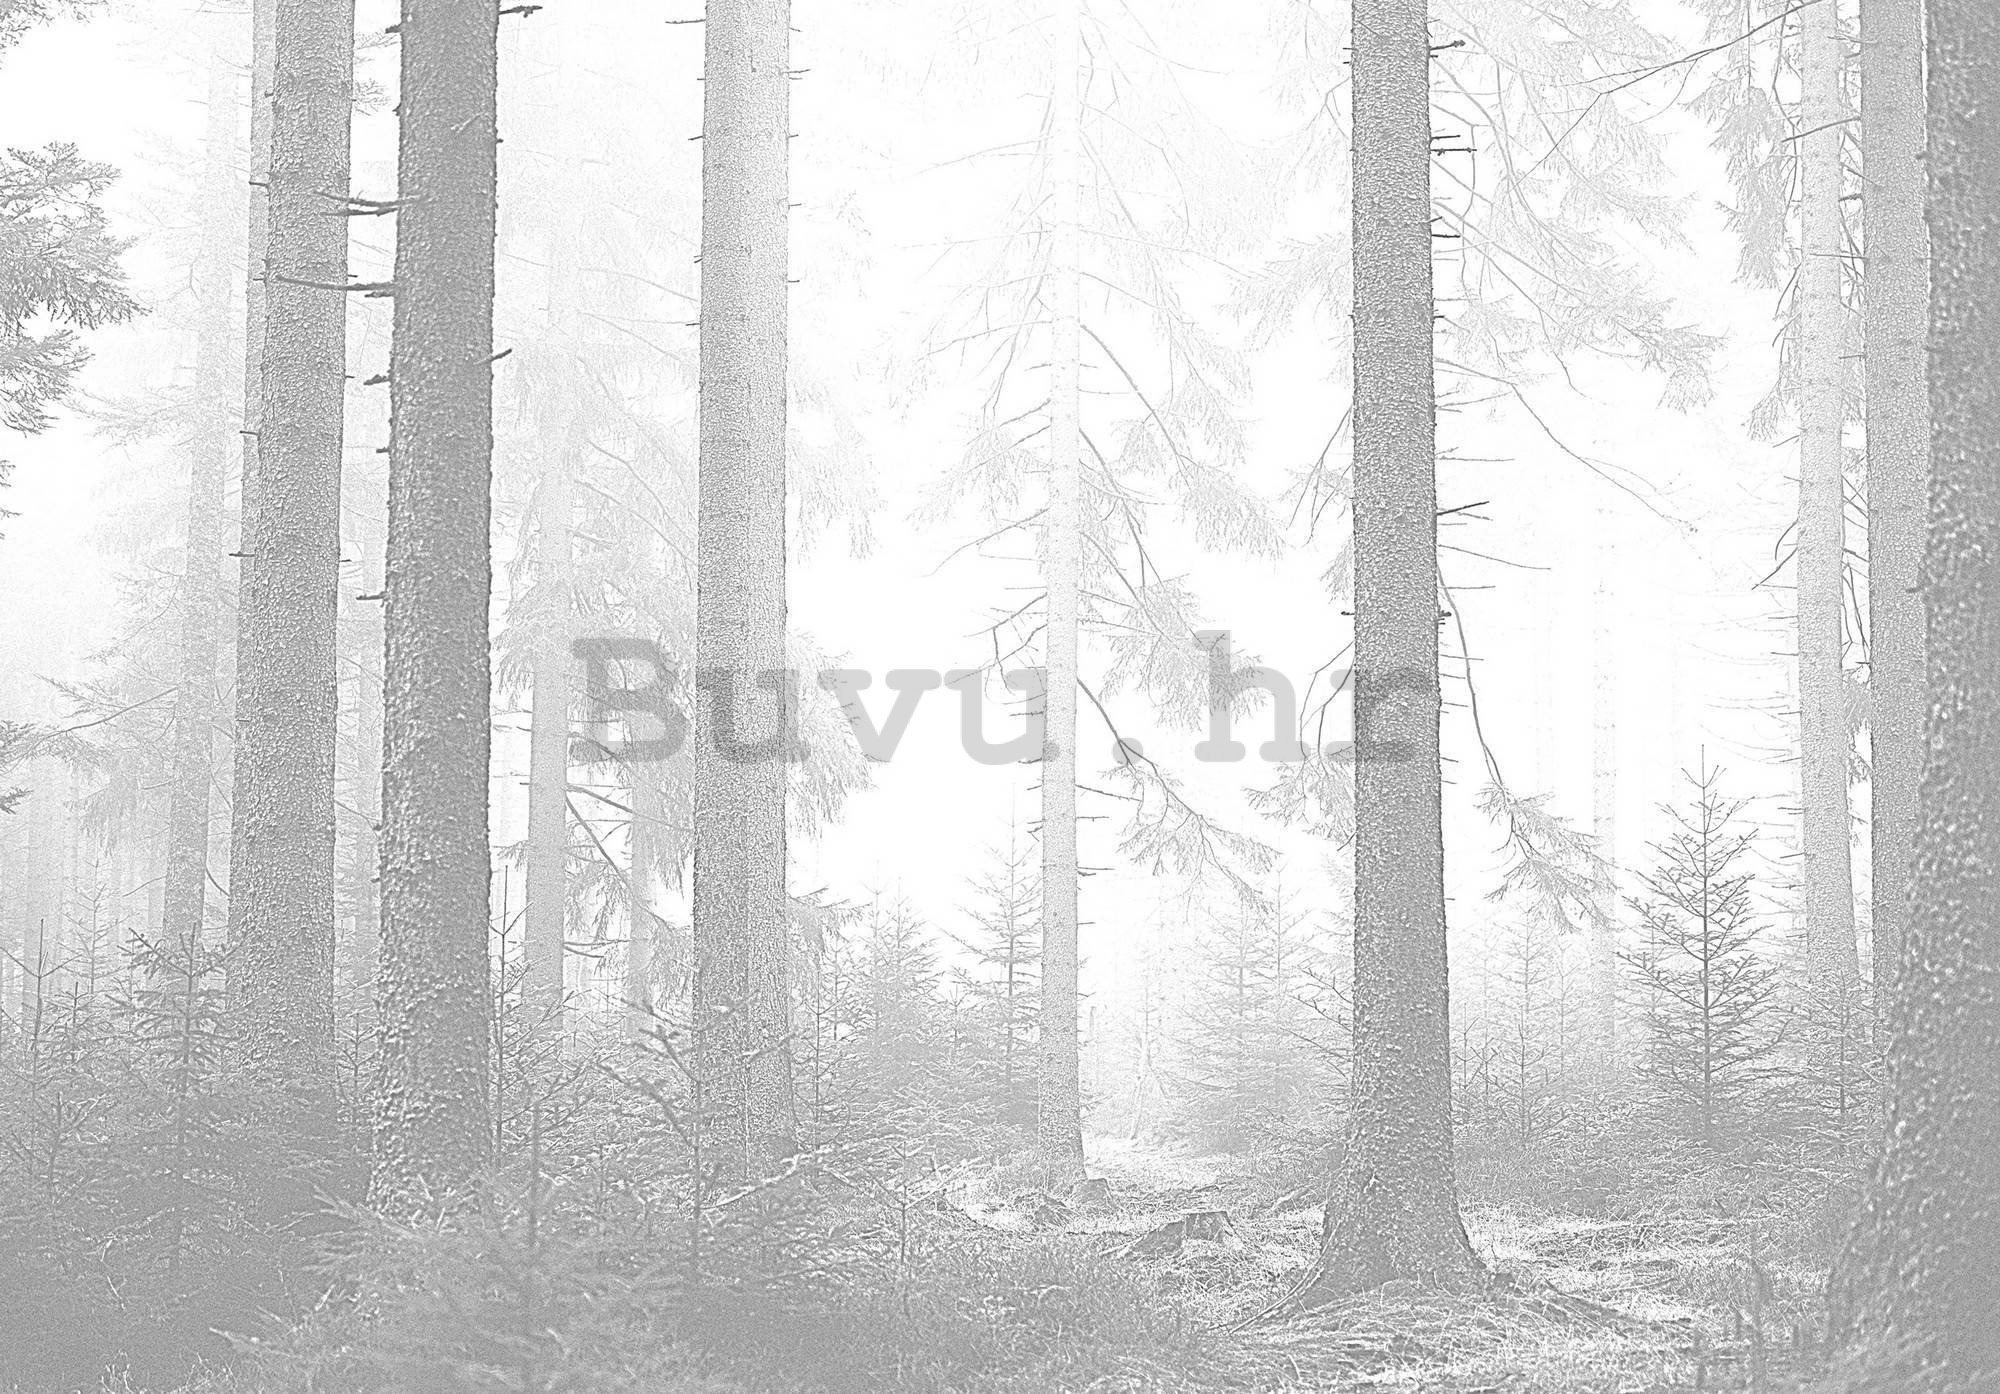 Vlies foto tapeta: Crna i bijela šuma (3) - 254x184 cm